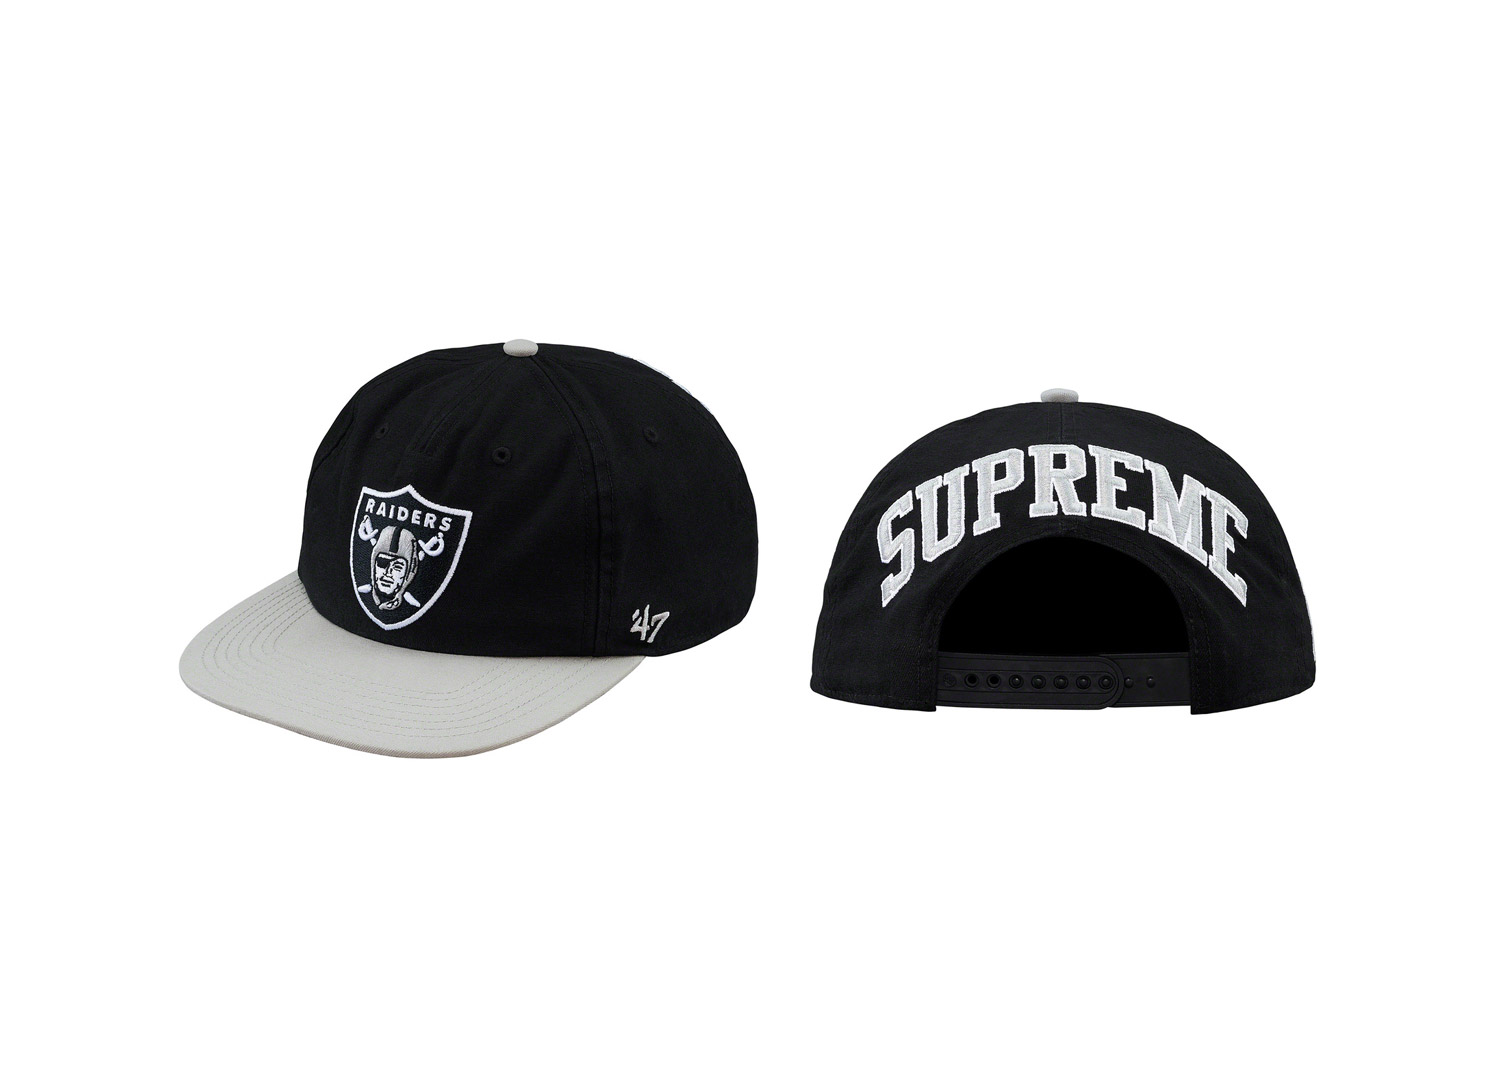 Supreme®/NFL/Raiders/47 5-Panel Hat